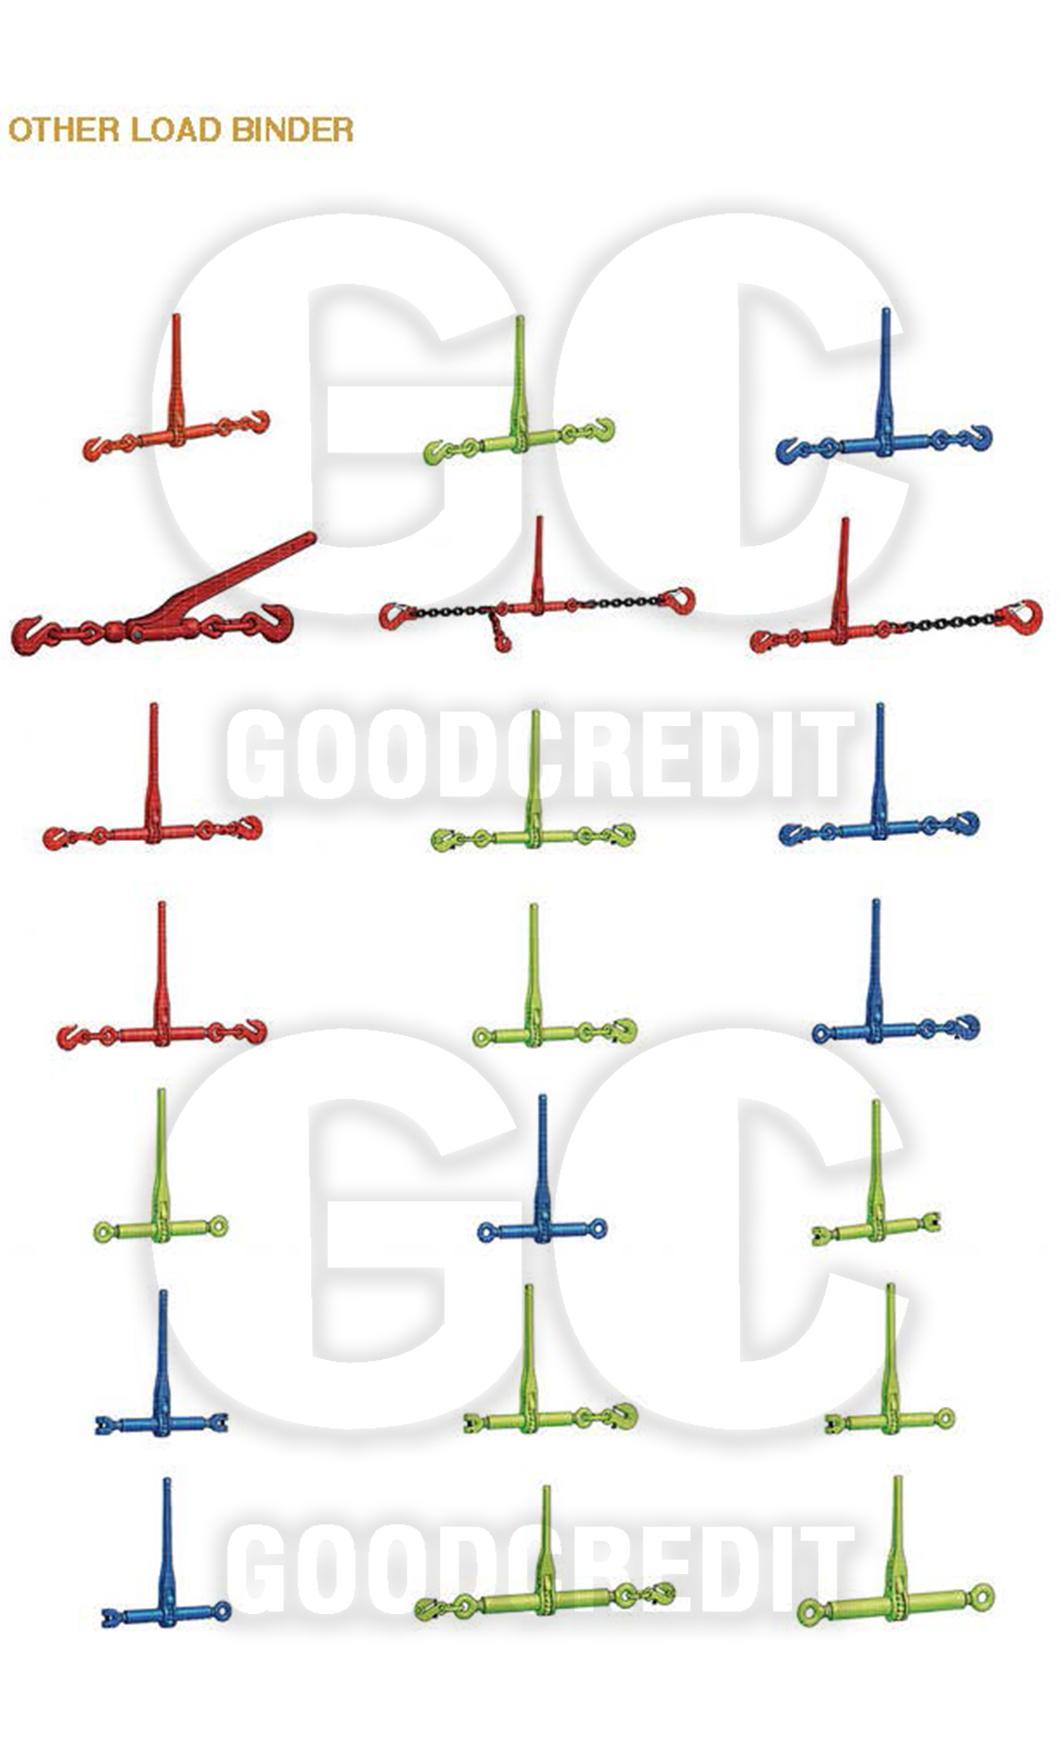 Standard Deep Red Ratchet Load Binder with Grab Hooks